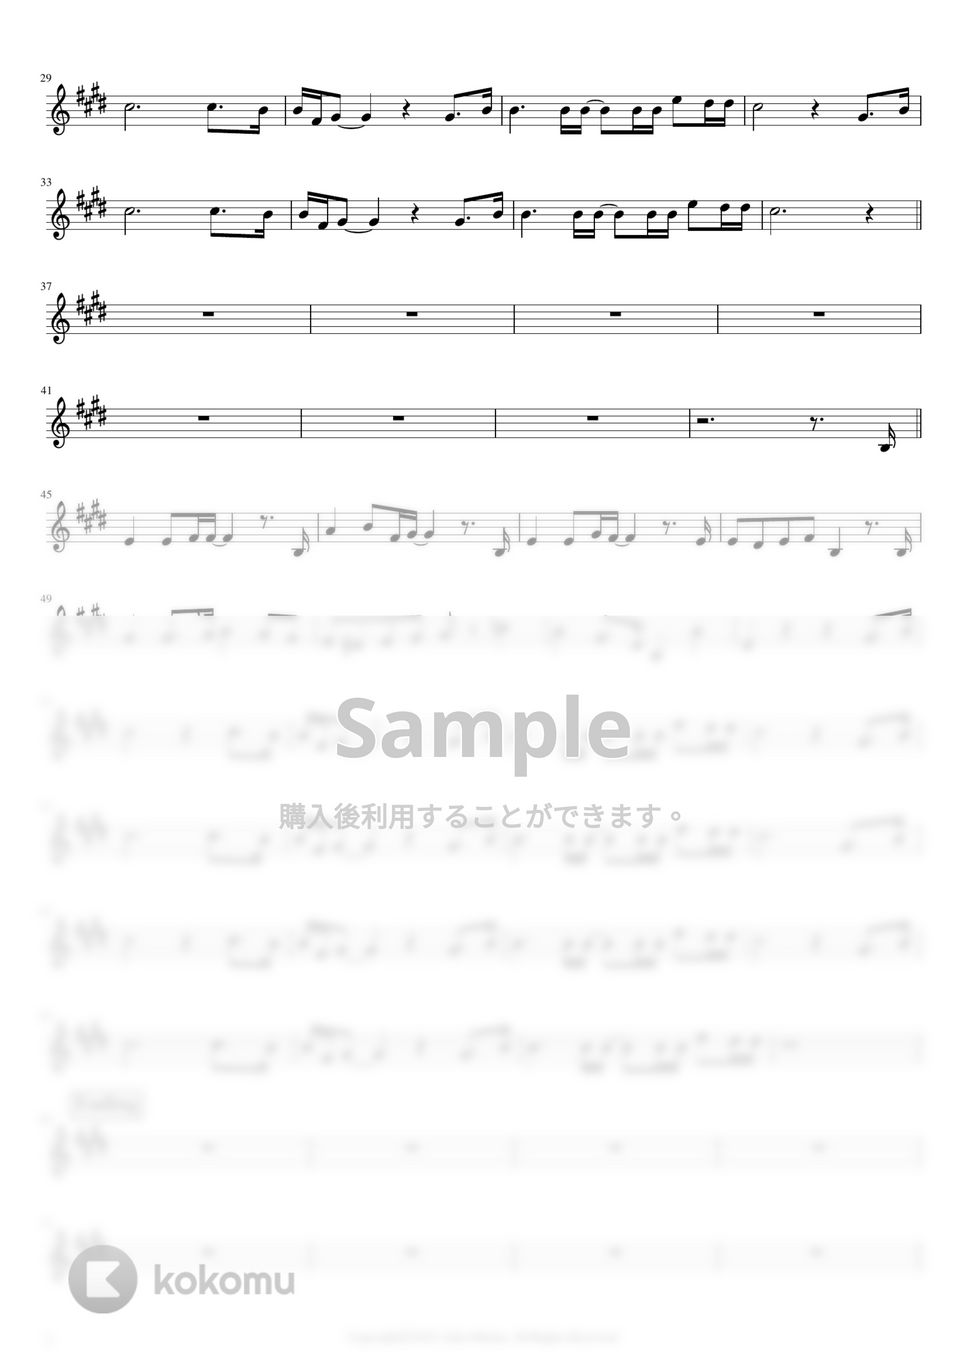 中島みゆき - ヘッドライト・テールライト (オカリナF管用メロディー譜(原曲キー)) by もりたあいか